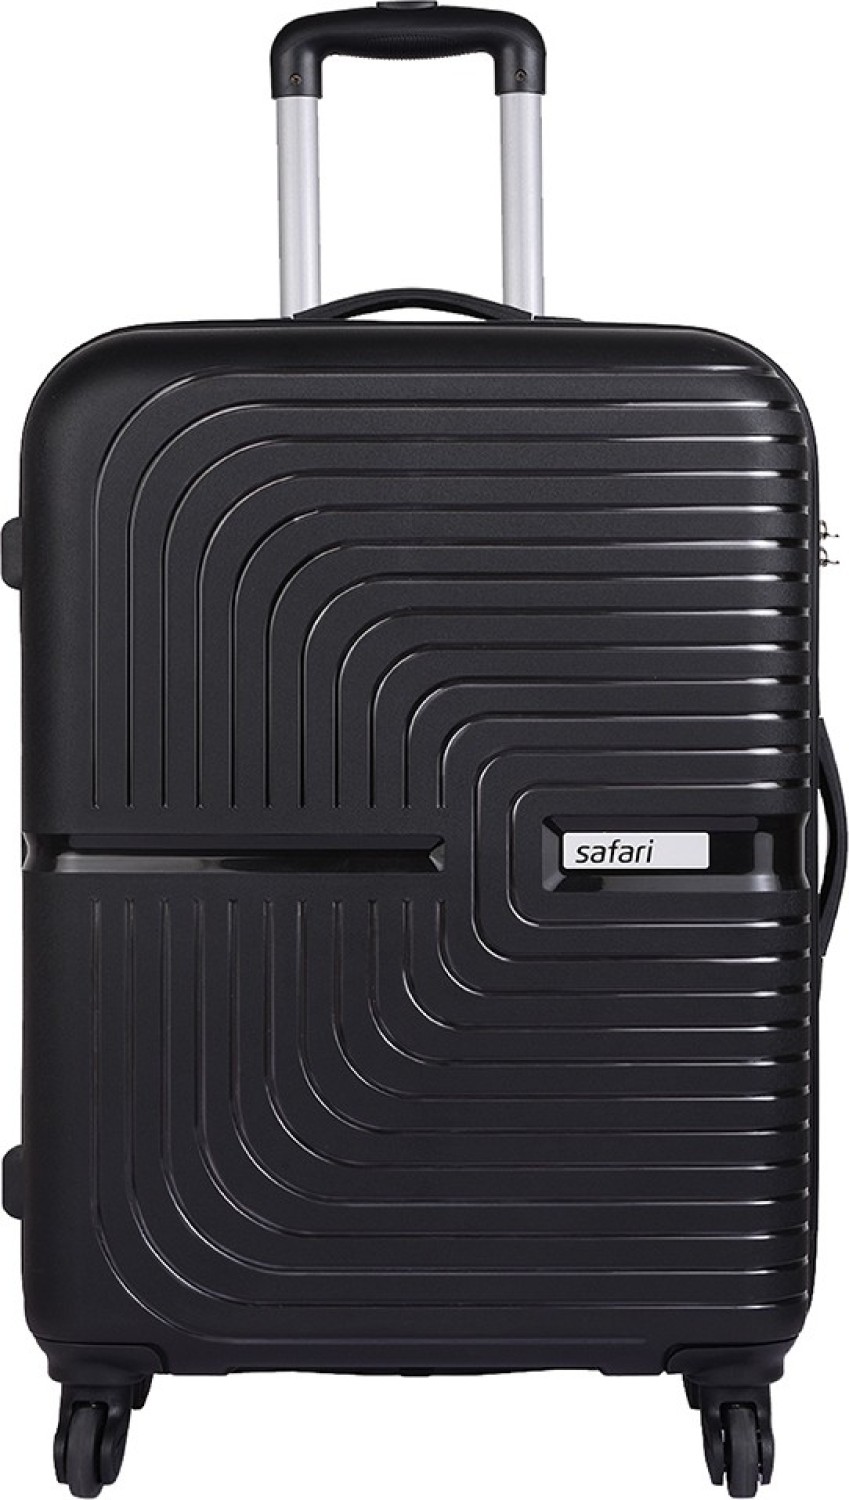 SAFARI ECLIPSE 66 Check-in Suitcase - 26 inch - Price History